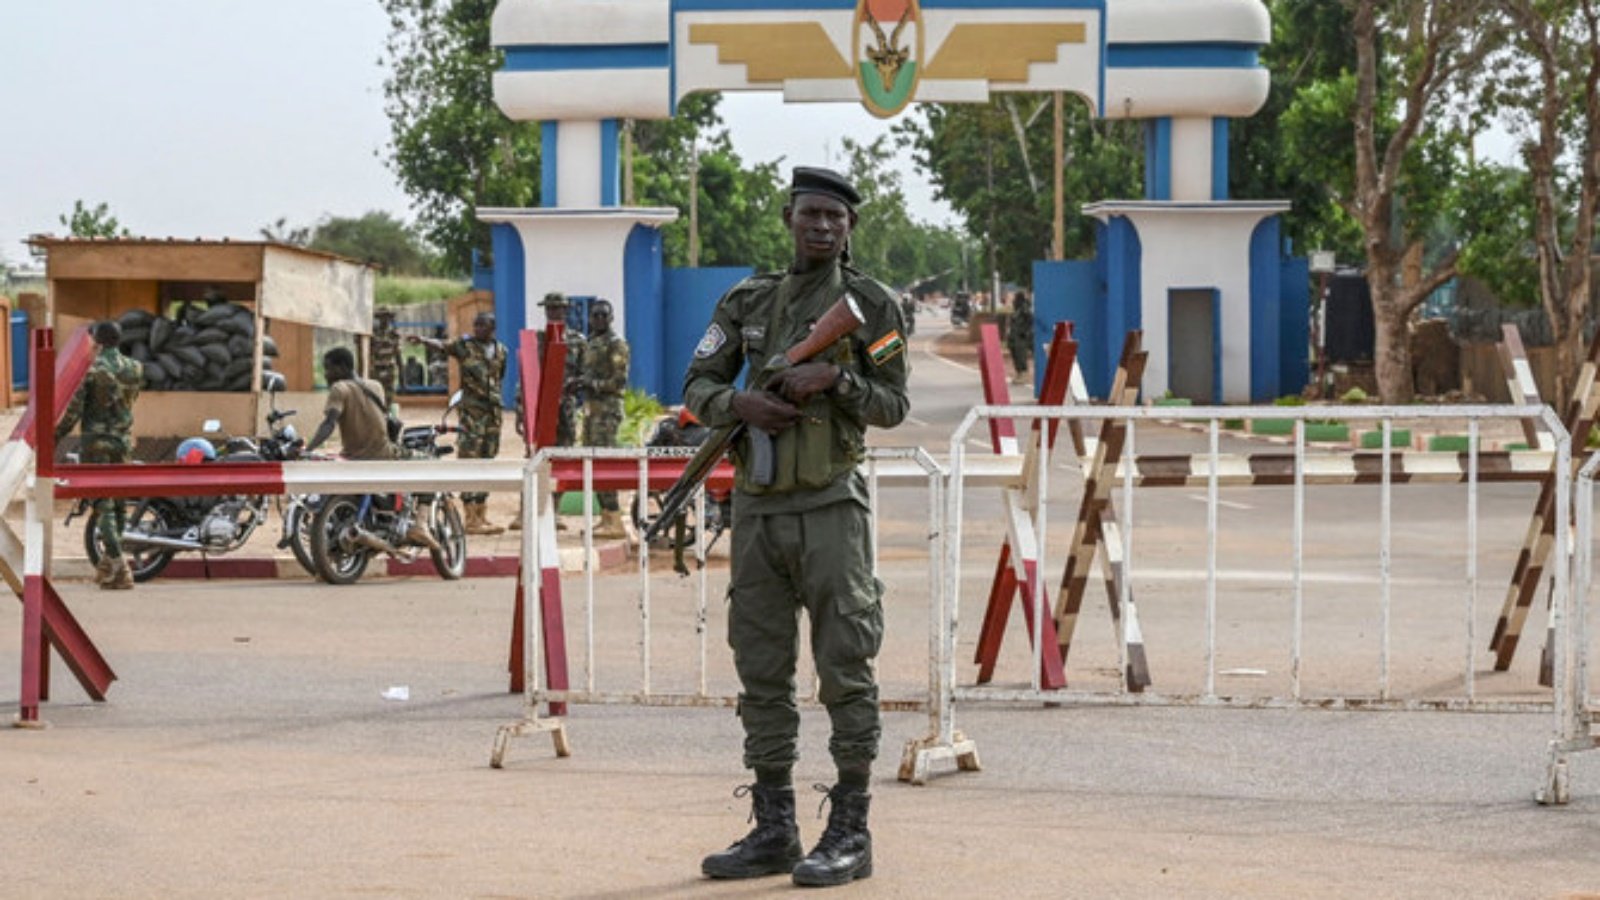 ضابط في الشرطة الوطنية النيجيرية يقف على أهبة الاستعداد أثناء احتجاج أنصار المجلس العسكري في النيجر خارج النيجر والقاعدة الجوية الفرنسية في نيامي في 30 أغسطس 2023 للمطالبة برحيل الجيش الفرنسي من النيجر